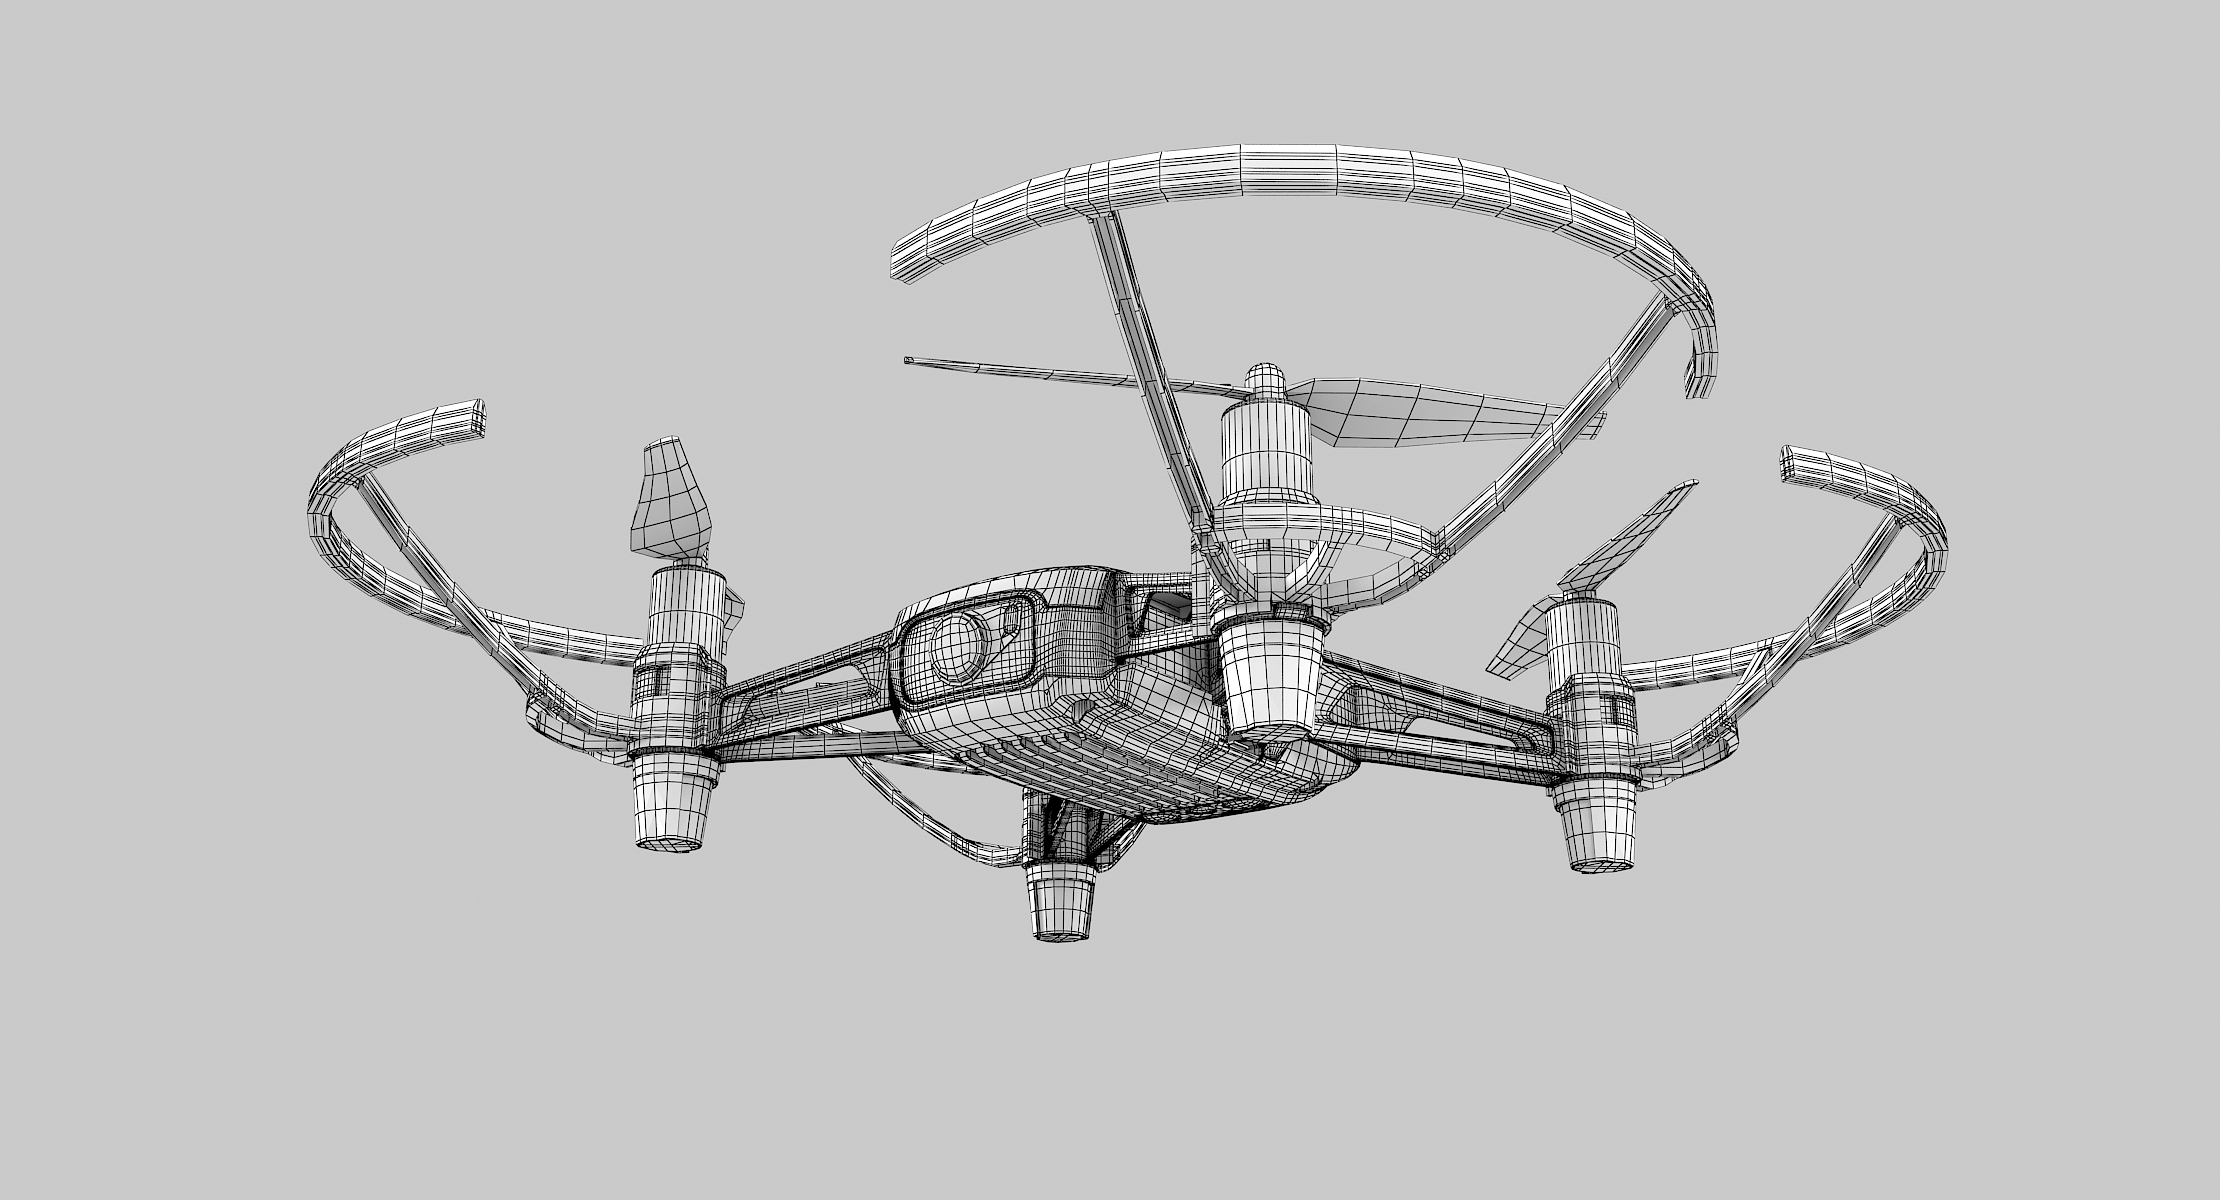 Dji tello drone 3D model - TurboSquid 1301752